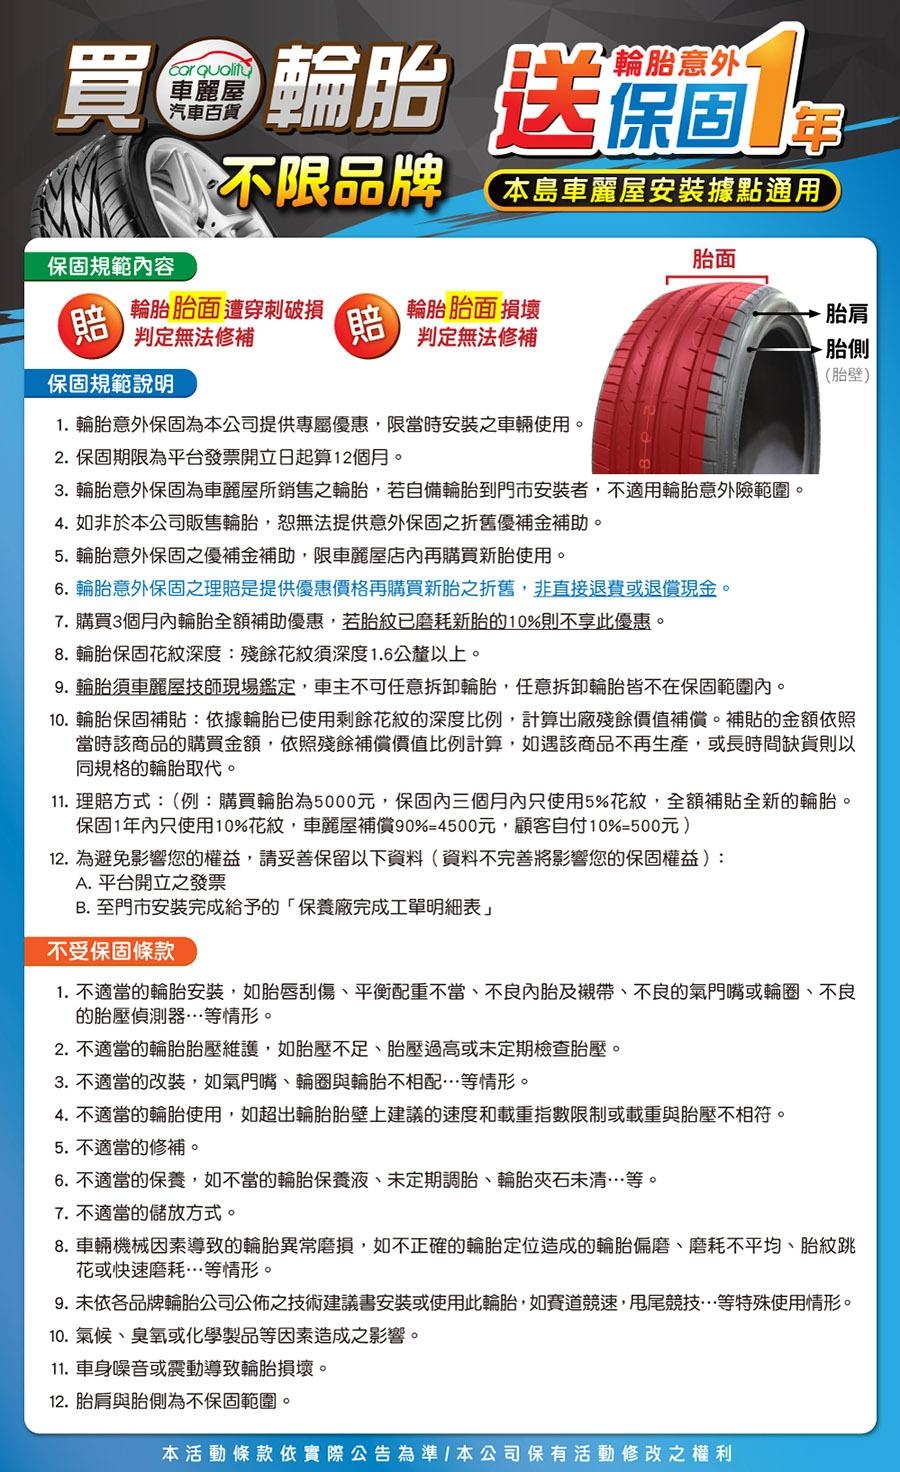 【馬牌】 UC6_185/60/15吋 舒適操控輪胎_送專業安裝 (UC6)